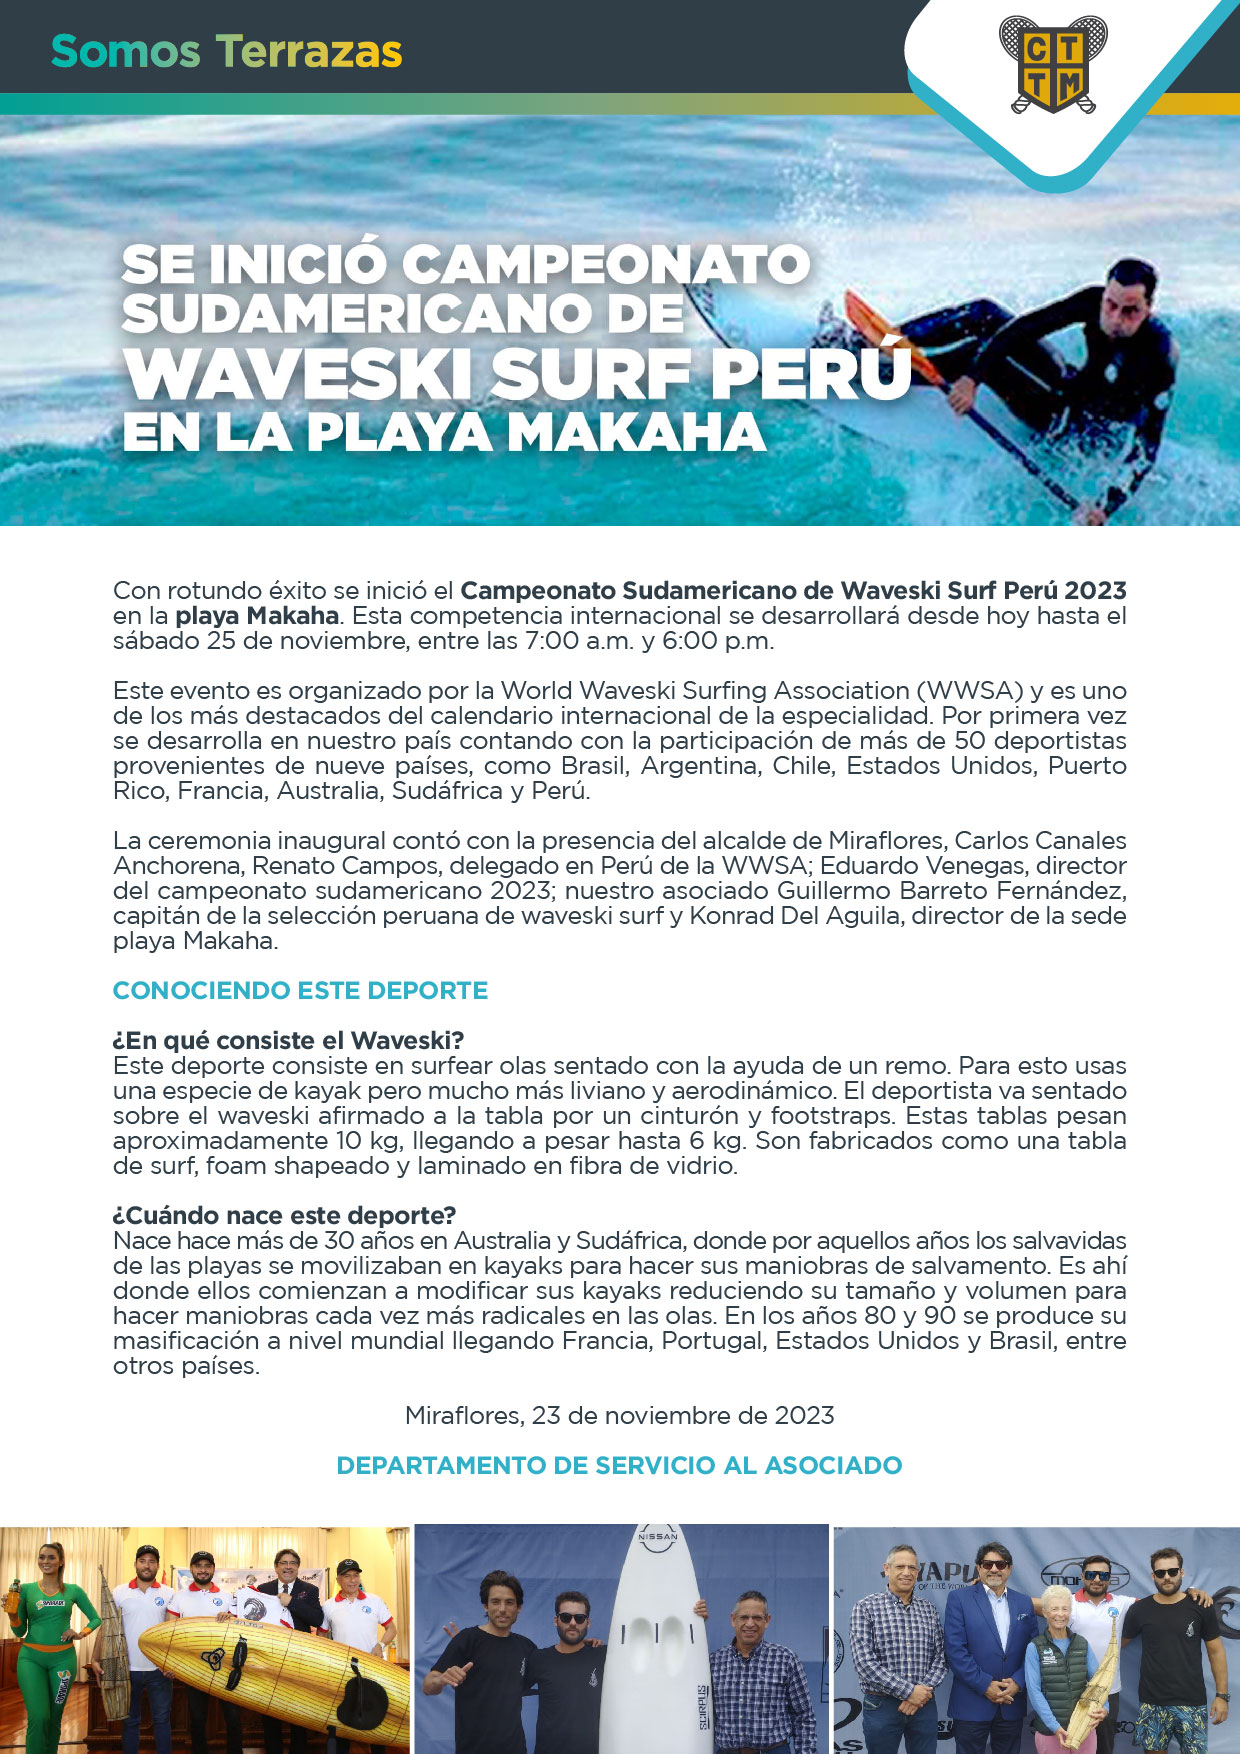 SE INICIÓ CAMPEONATO SUDAMERICANO DE WAVESKI SURF PERÚ EN LA PLAYA MAKAHA